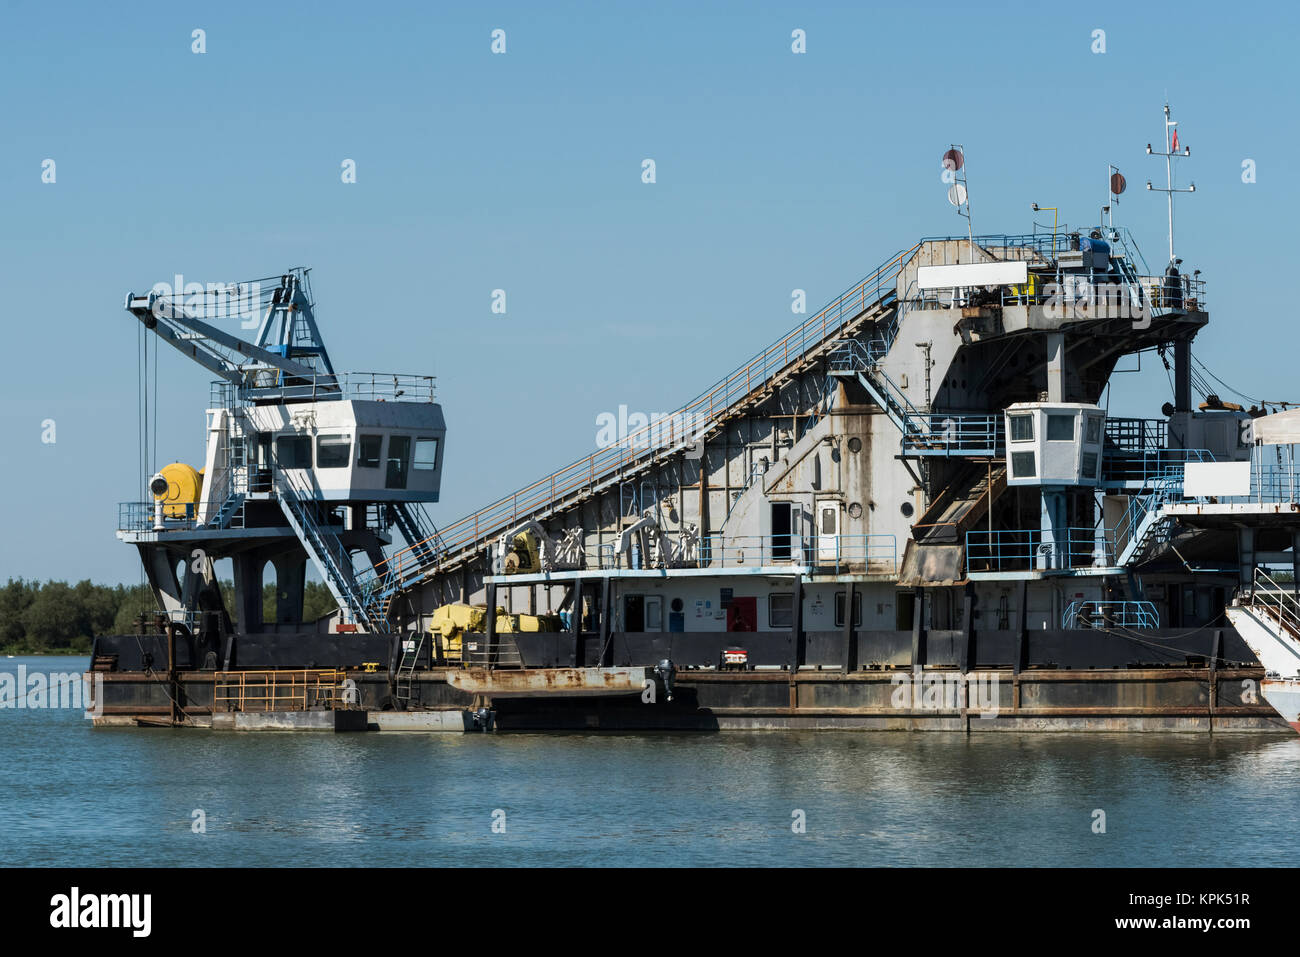 Industrial barge on the Danube River; Kostolac, Vojvodina, Serbia Stock Photo